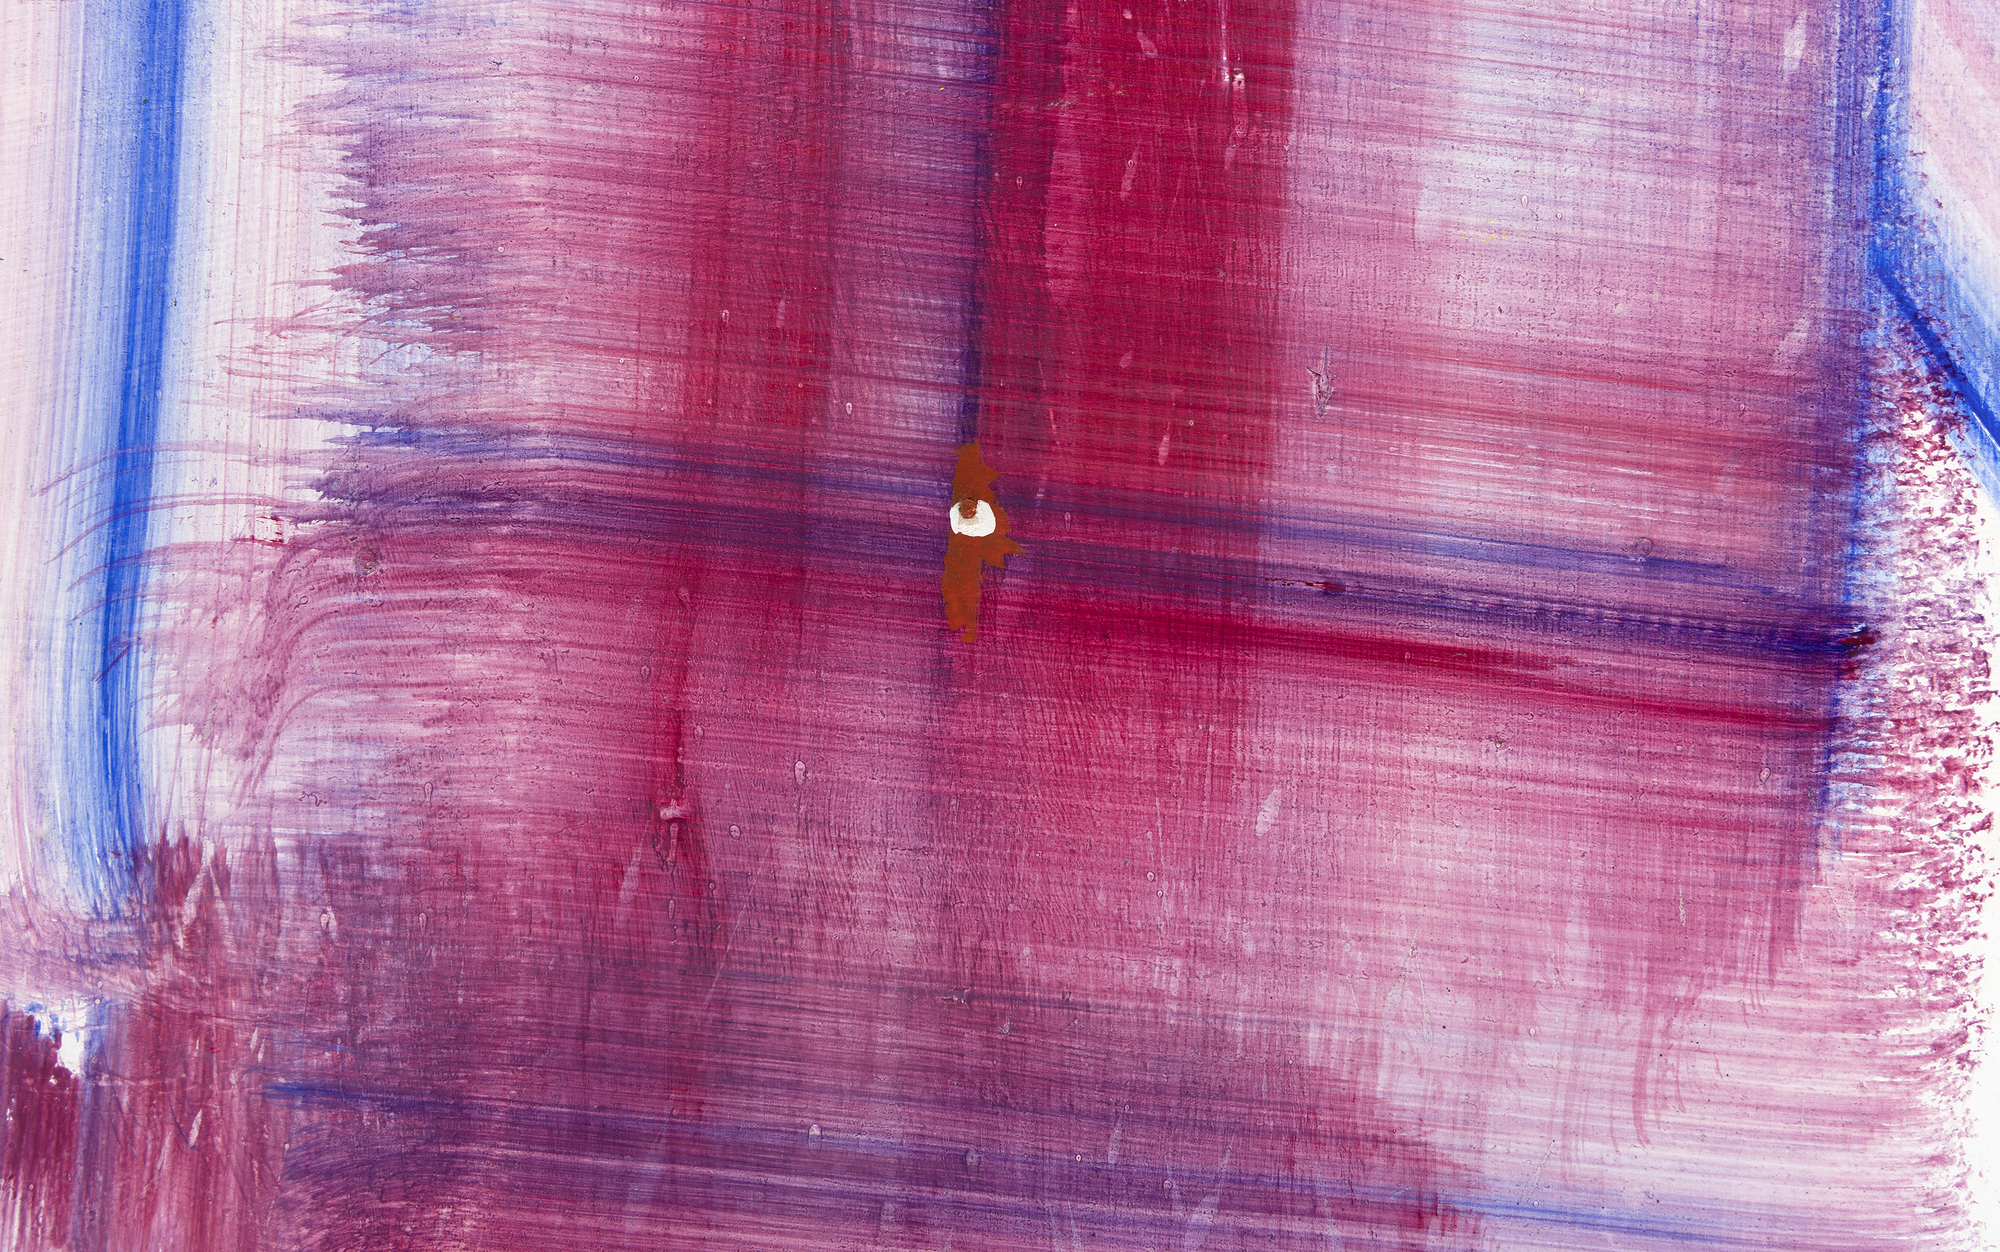 HANS HOFMANN - The Climb - oil on panel - 84 x 47 1/2 in.